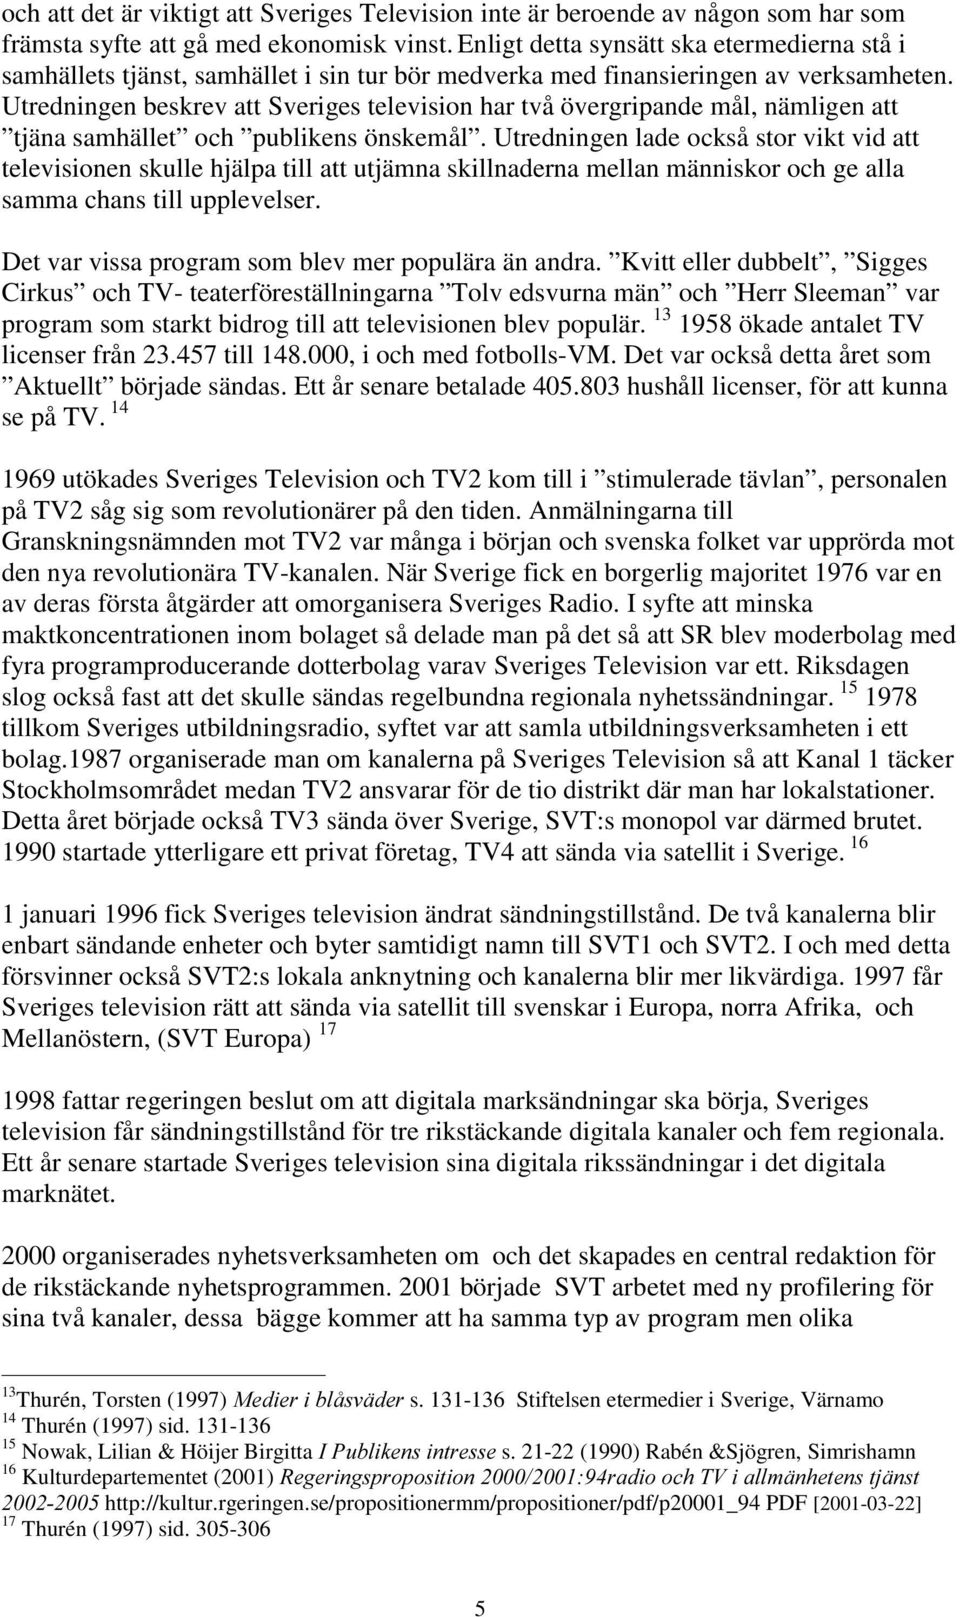 Utredningen beskrev att Sveriges television har två övergripande mål, nämligen att tjäna samhället och publikens önskemål.